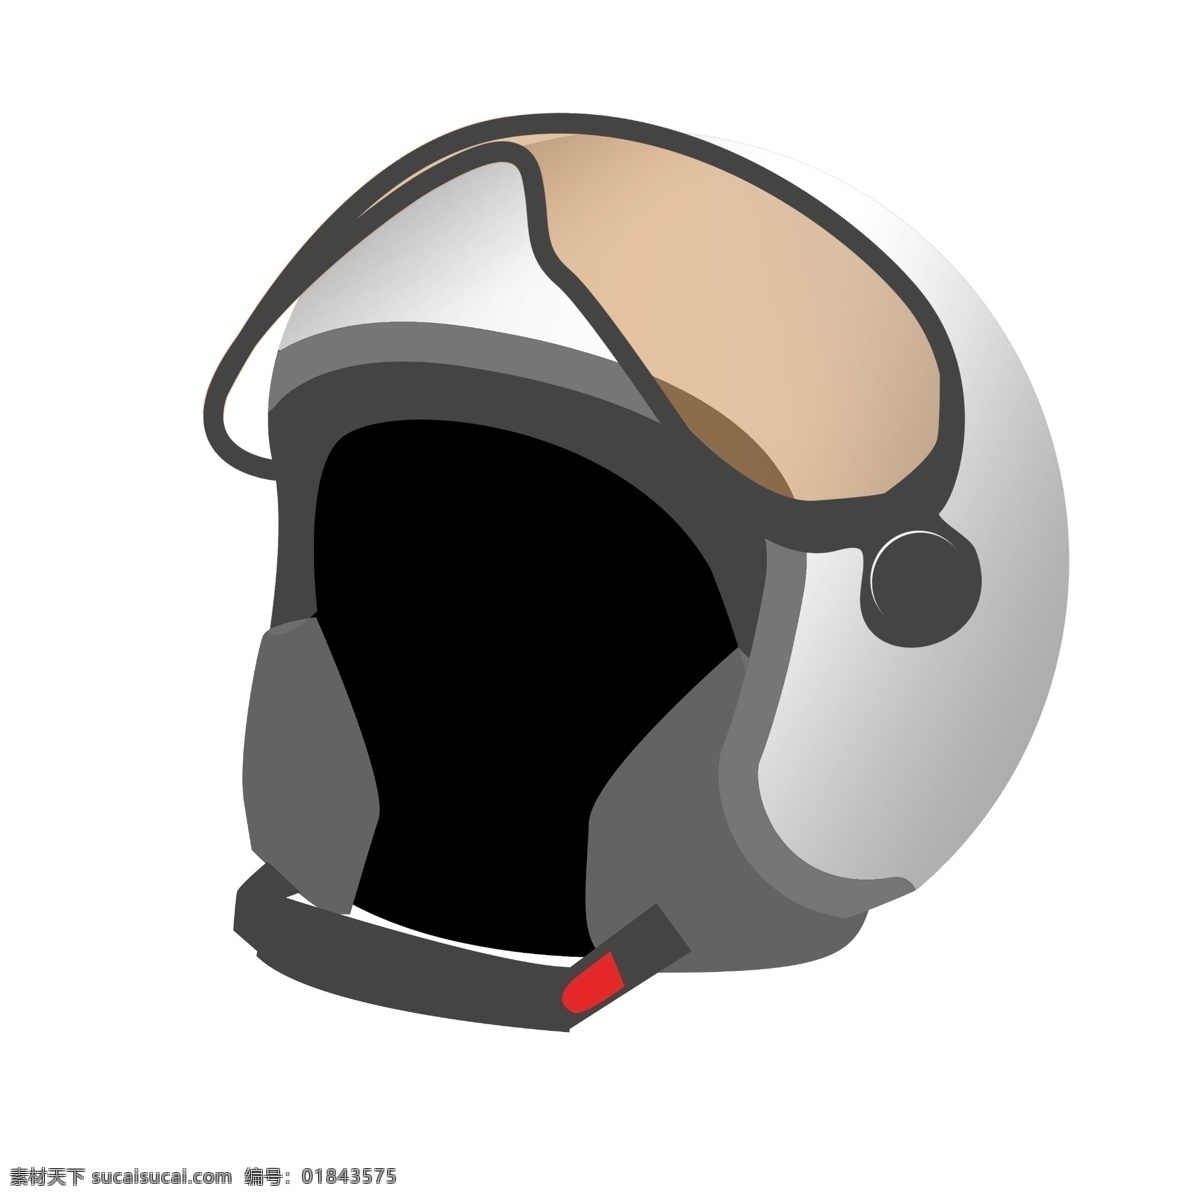 立体 头盔 装饰 插画 立体头盔 漂亮的头盔 白色的头盔 创意头盔 精美头盔 头盔装饰 头盔插画